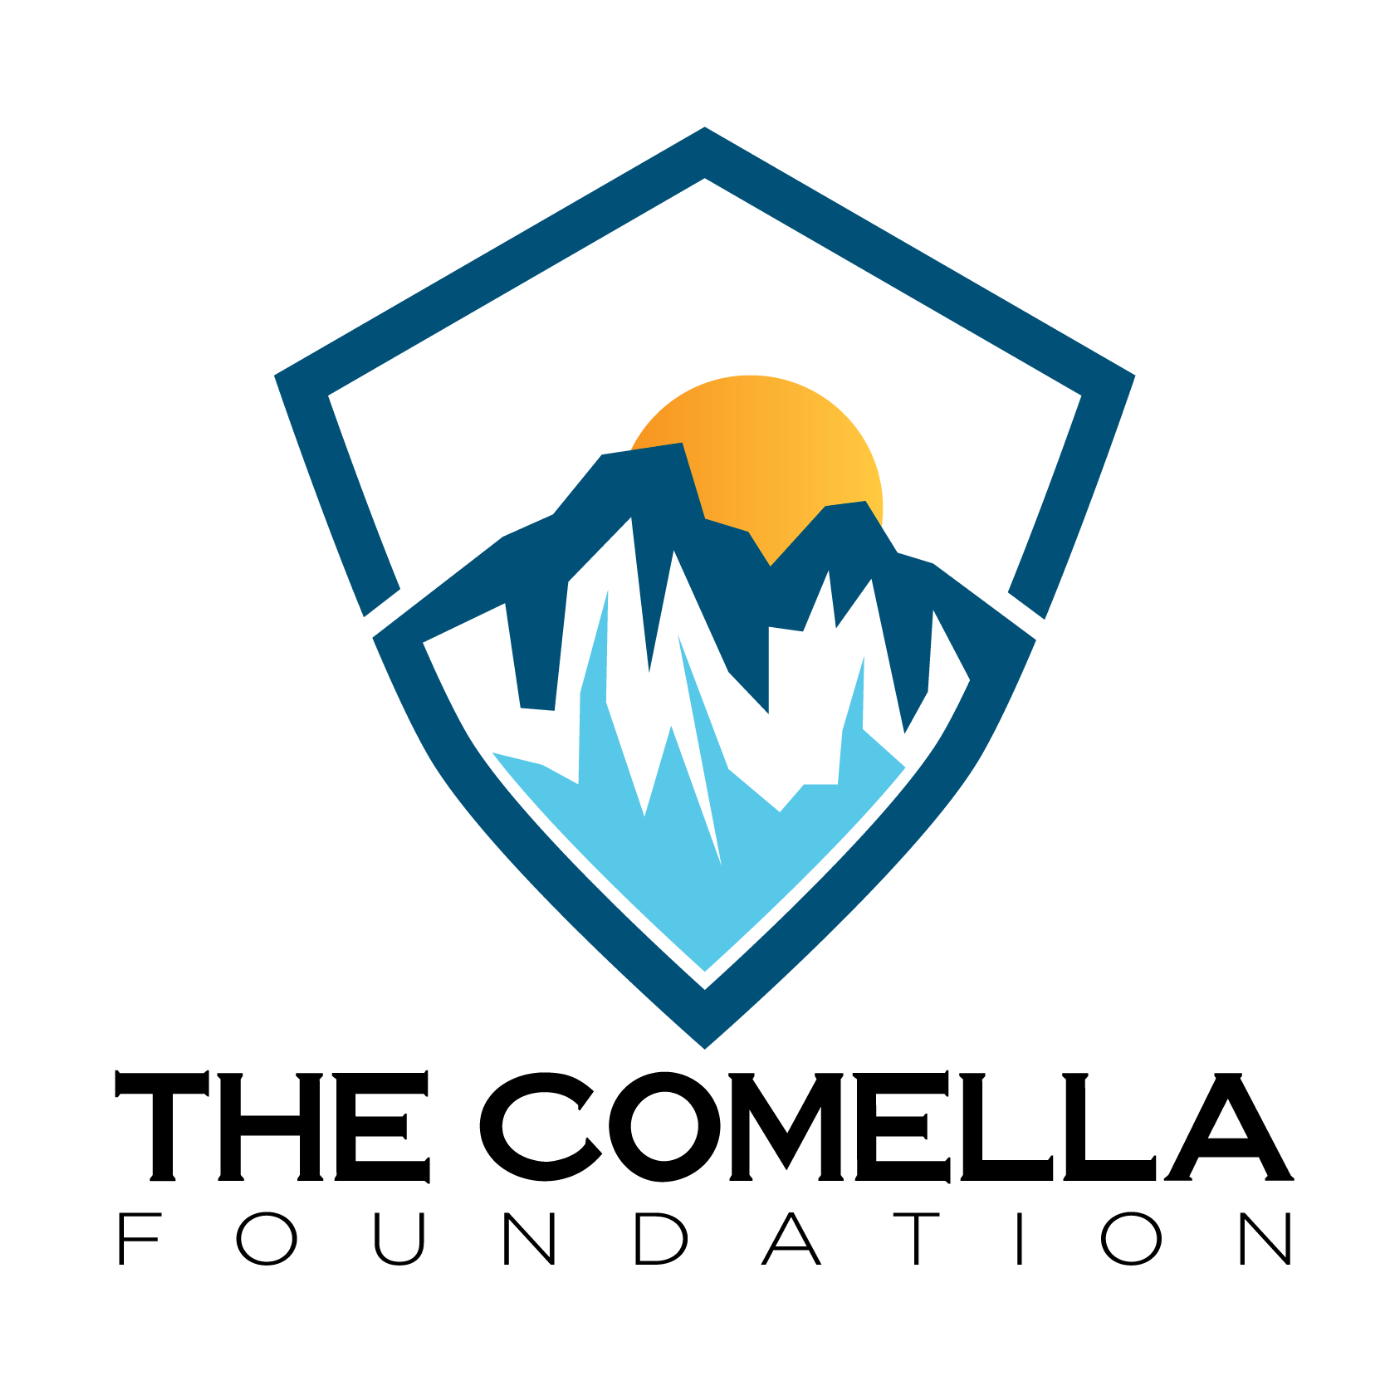 The Comella Foundation